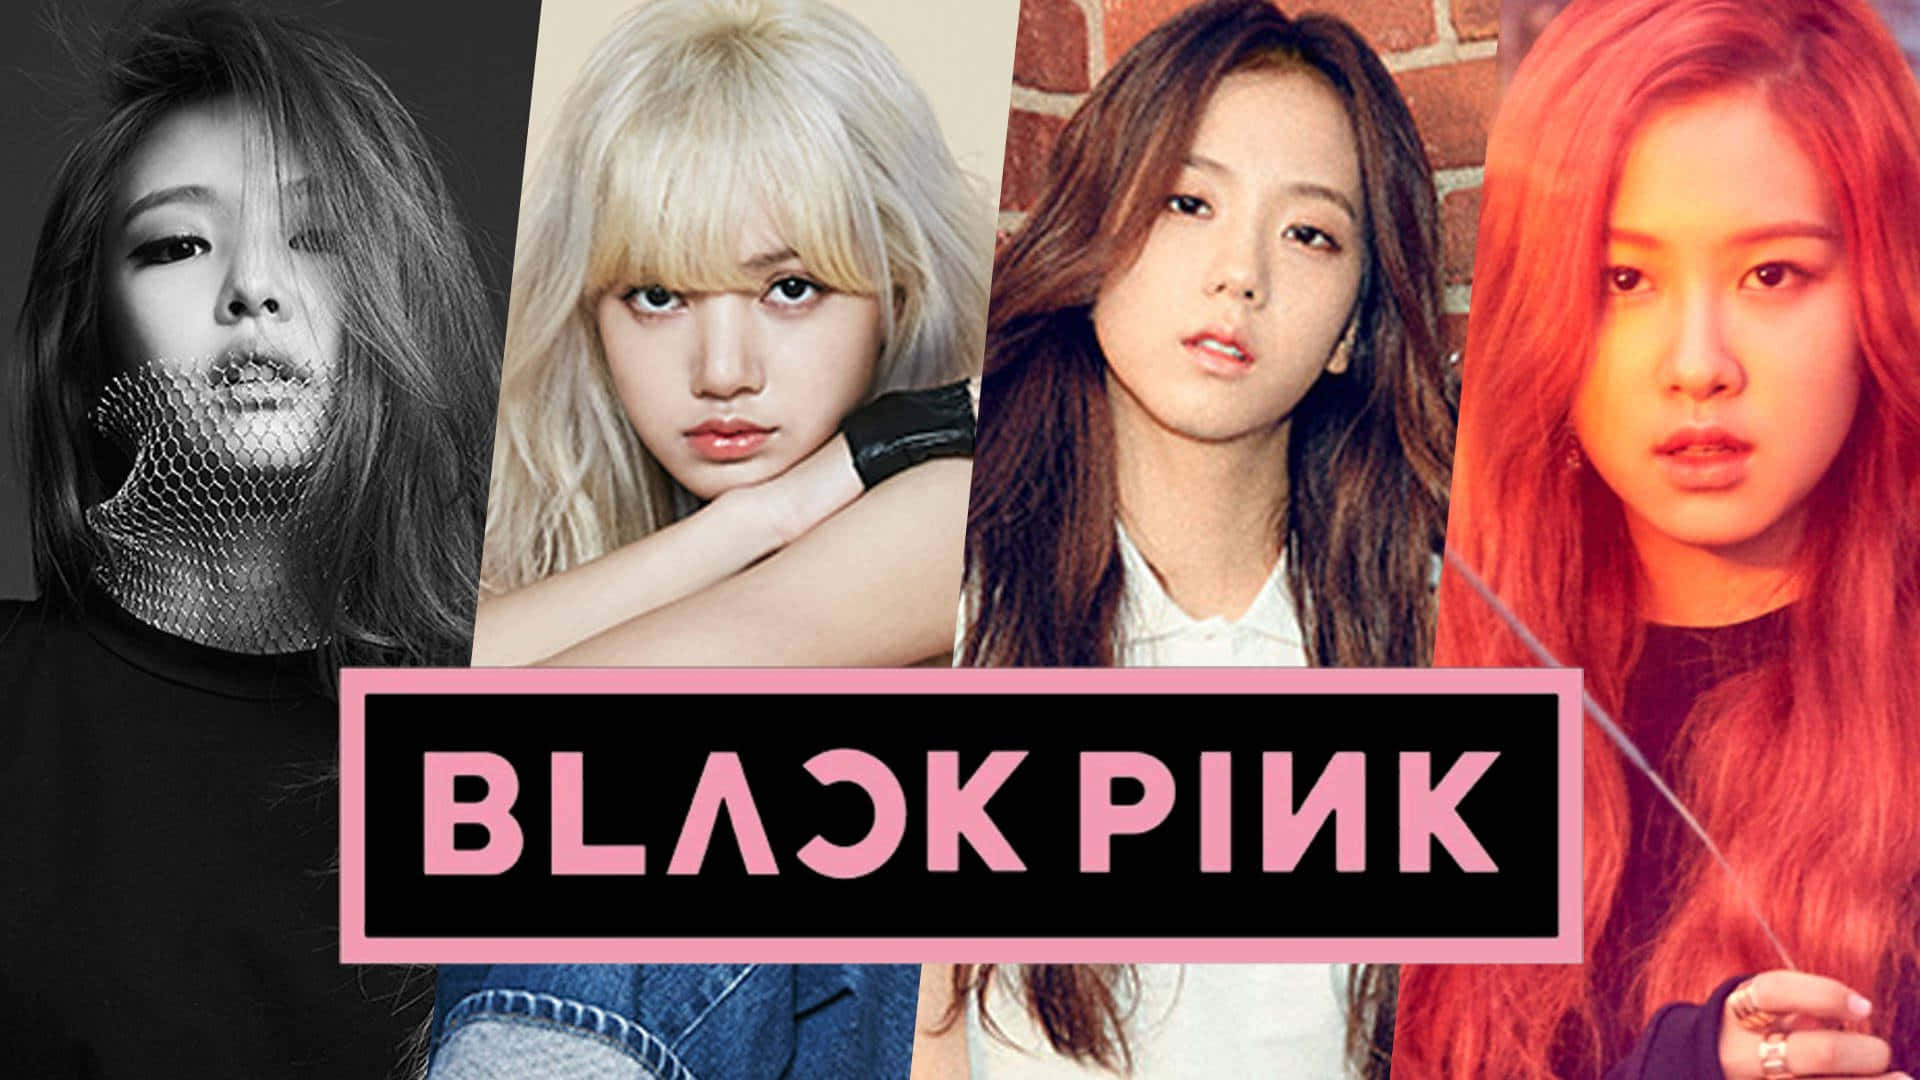 Elgrupo De Chicas De K-pop Blackpink Hace Una Poderosa Declaración Con Su Estilo Carismático.